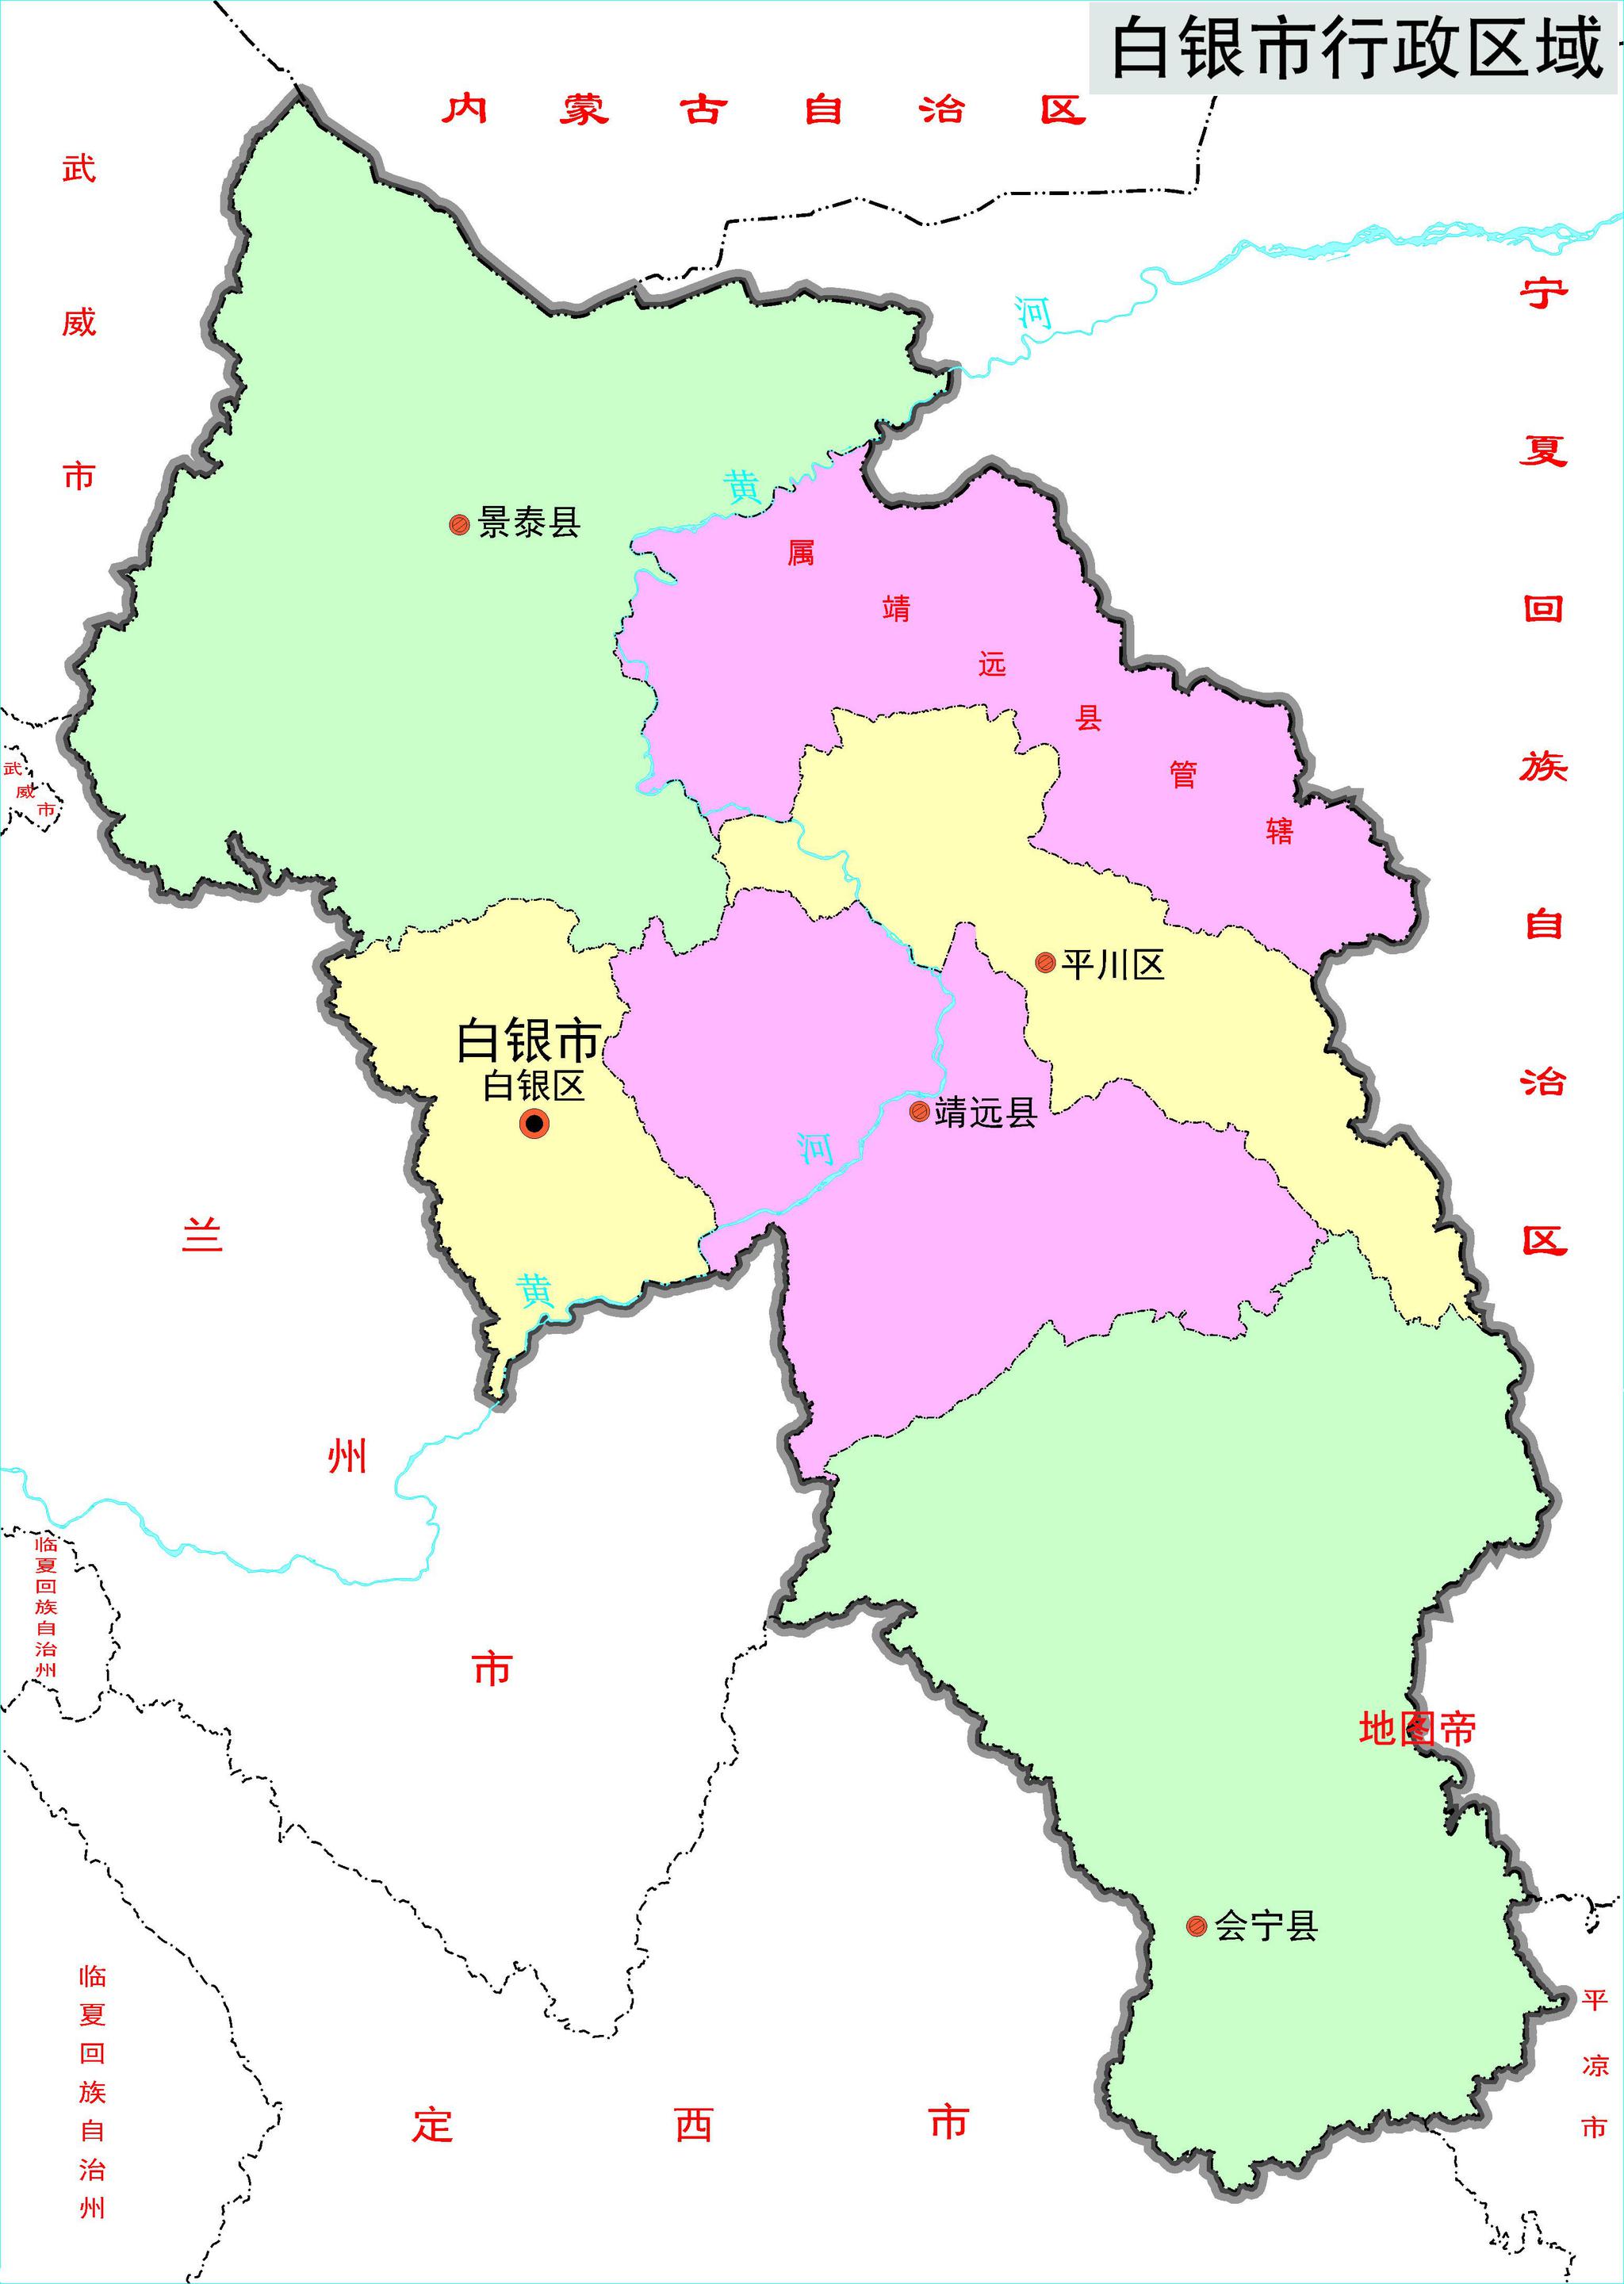 高唐县尹集镇(2019-2035年)总体规划公示_发展